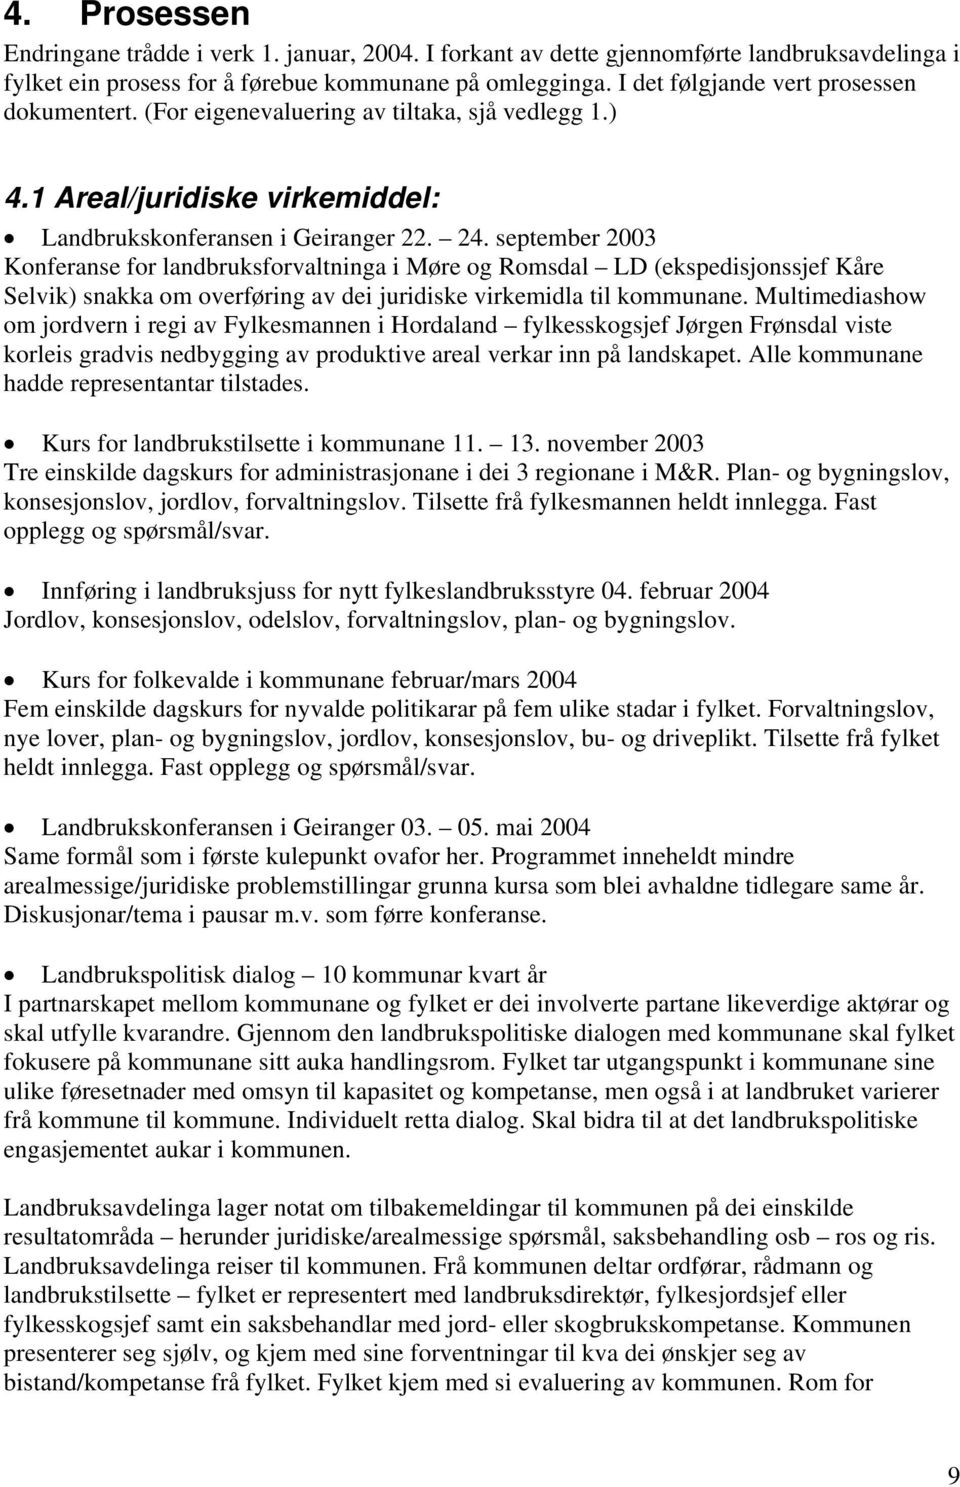 september 2003 Konferanse for landbruksforvaltninga i Møre og Romsdal LD (ekspedisjonssjef Kåre Selvik) snakka om overføring av dei juridiske virkemidla til kommunane.